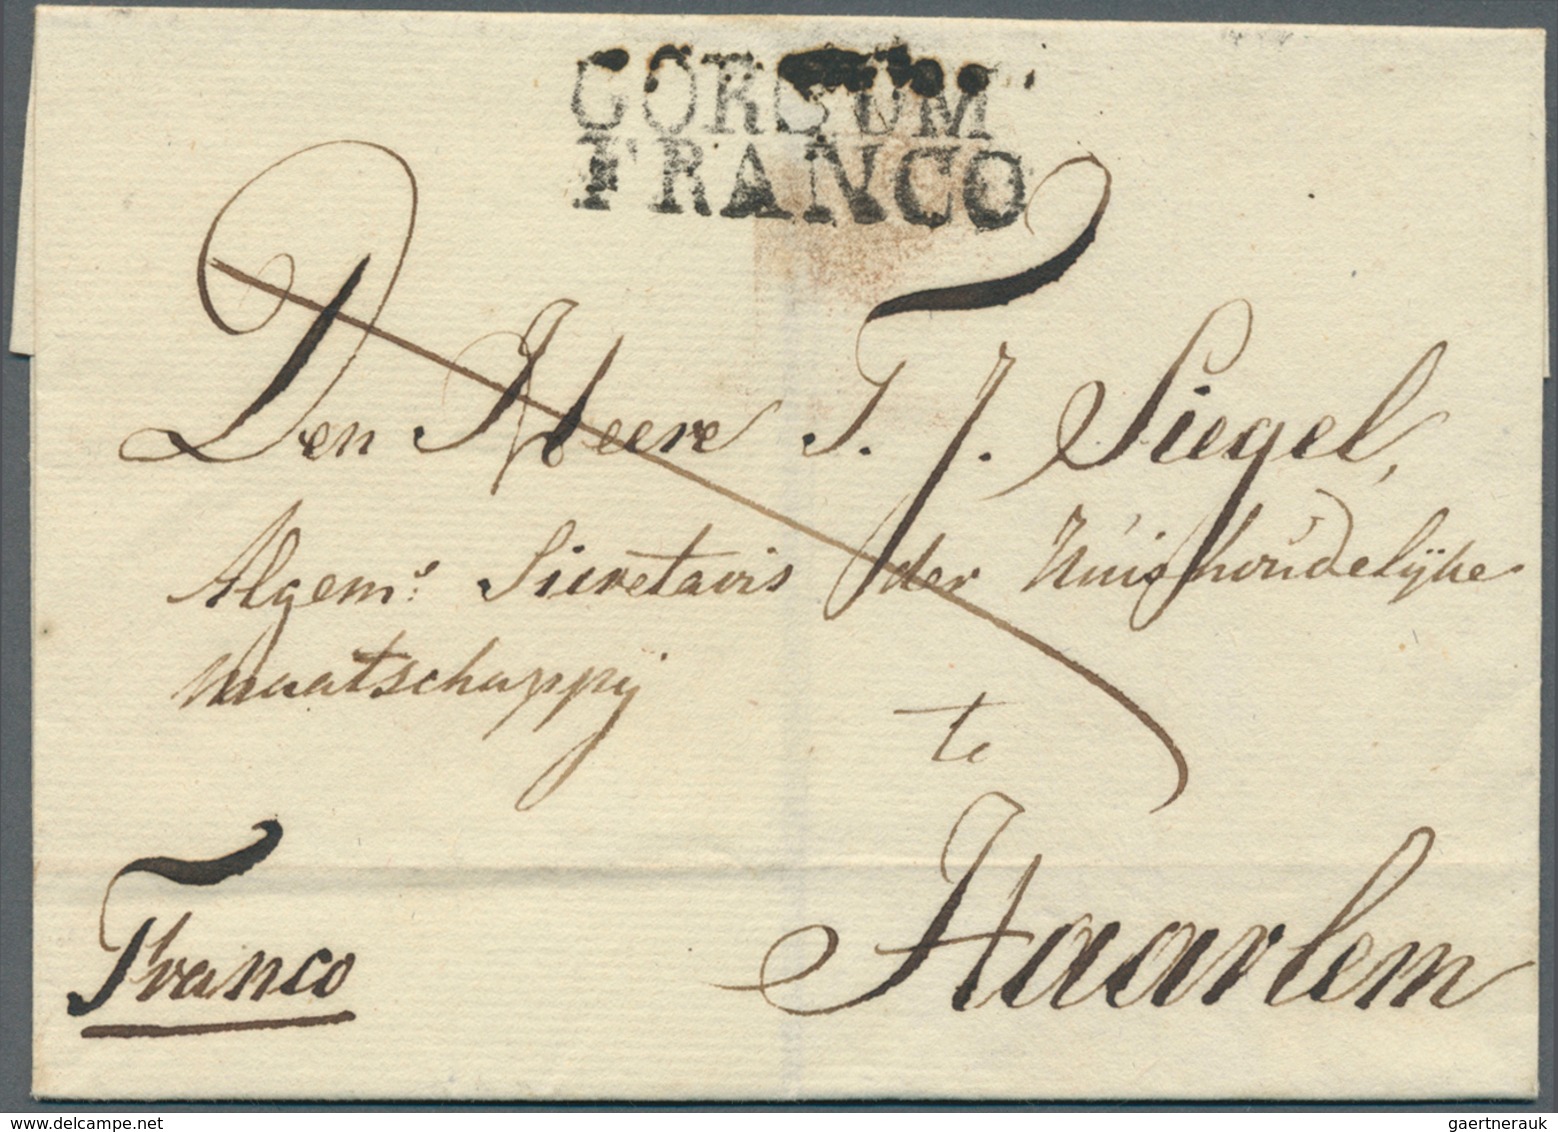 27413 Niederlande - Vorphilatelie: 1800/1850 (ca.), Partie von ca. 110 Briefen mit verschiedensten "FRANCO